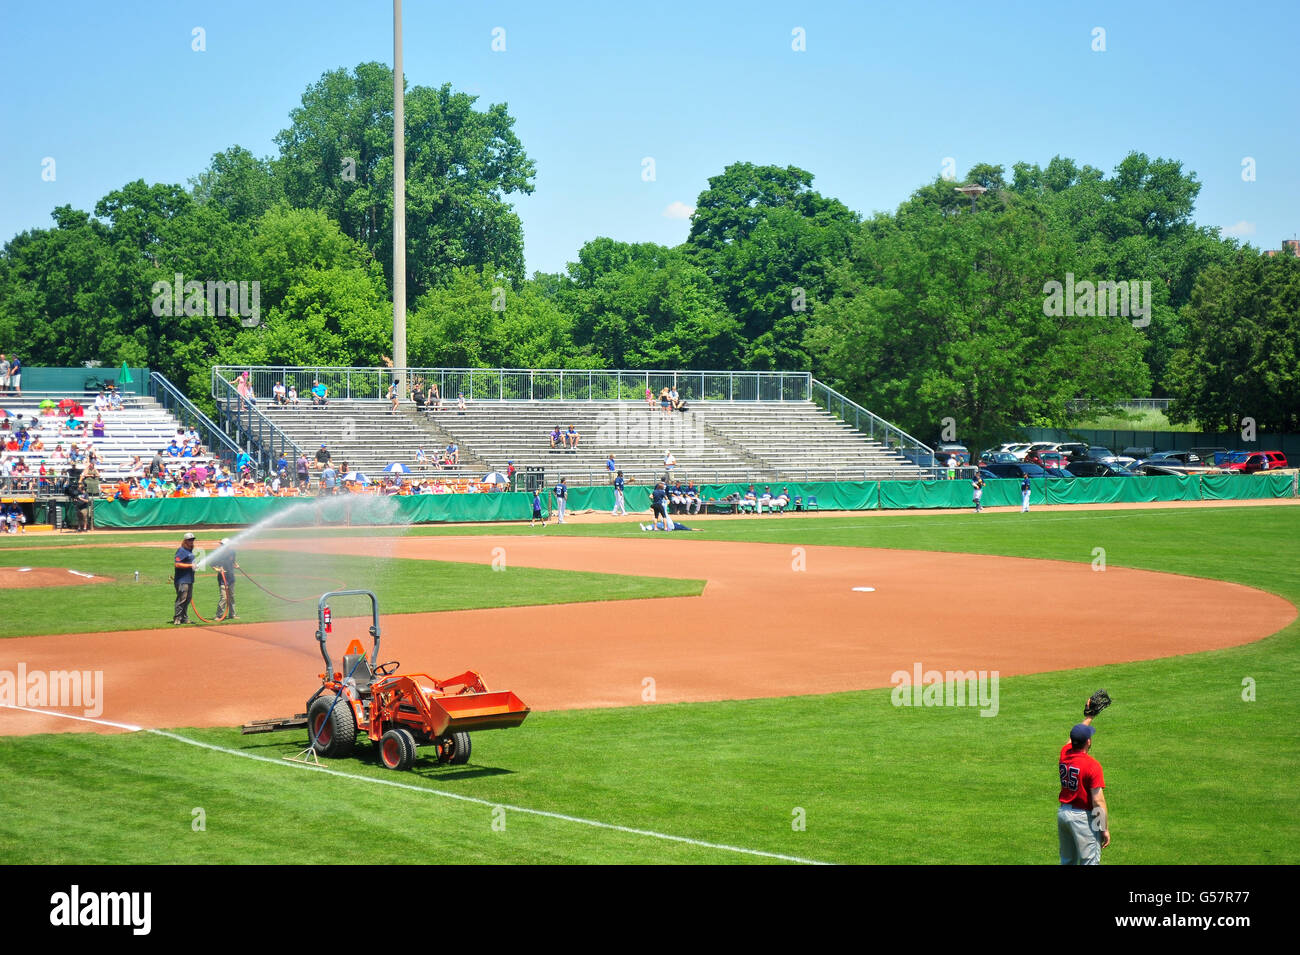 Preparazione per una partita di baseball all'Labatt Park che è il più antico operare continuamente motivi di baseball nel mondo. Foto Stock